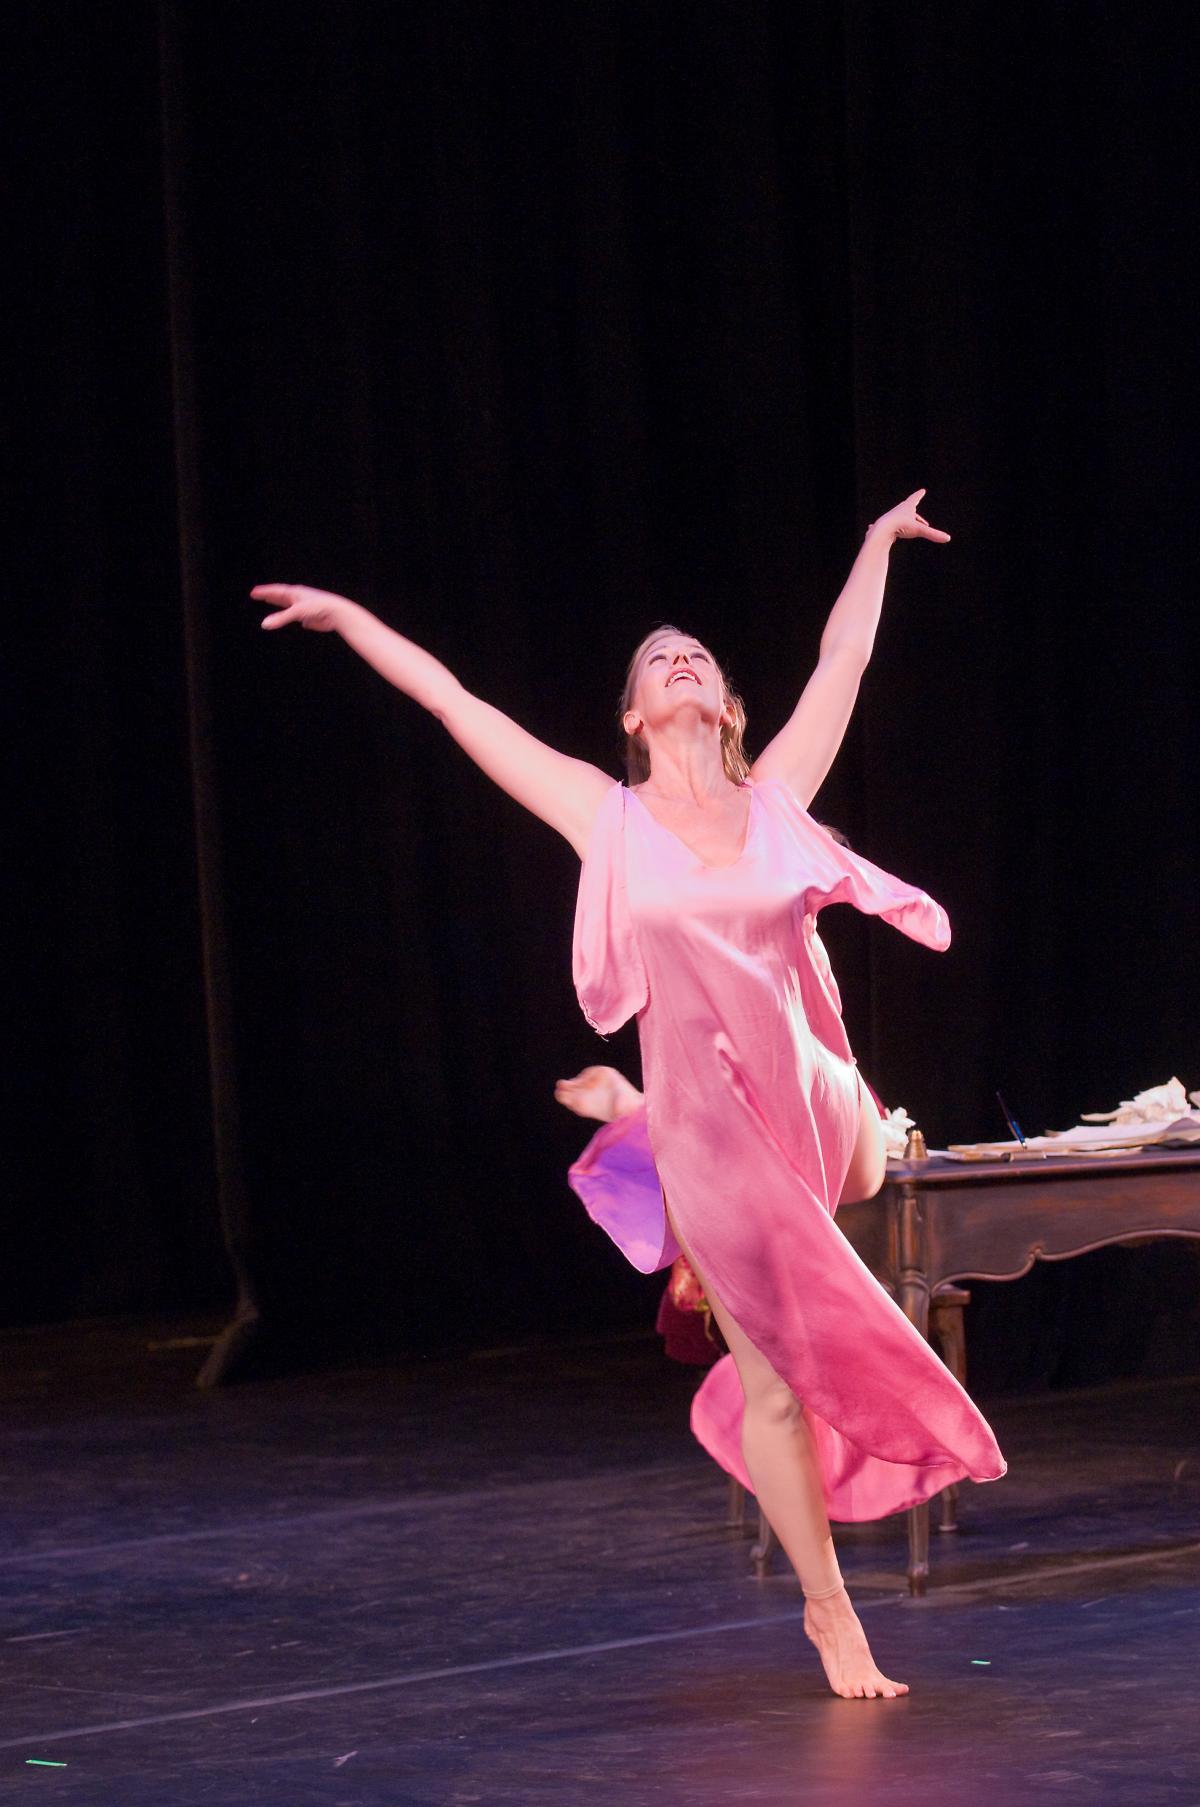 A dancer performs Isadora Duncan's choreography